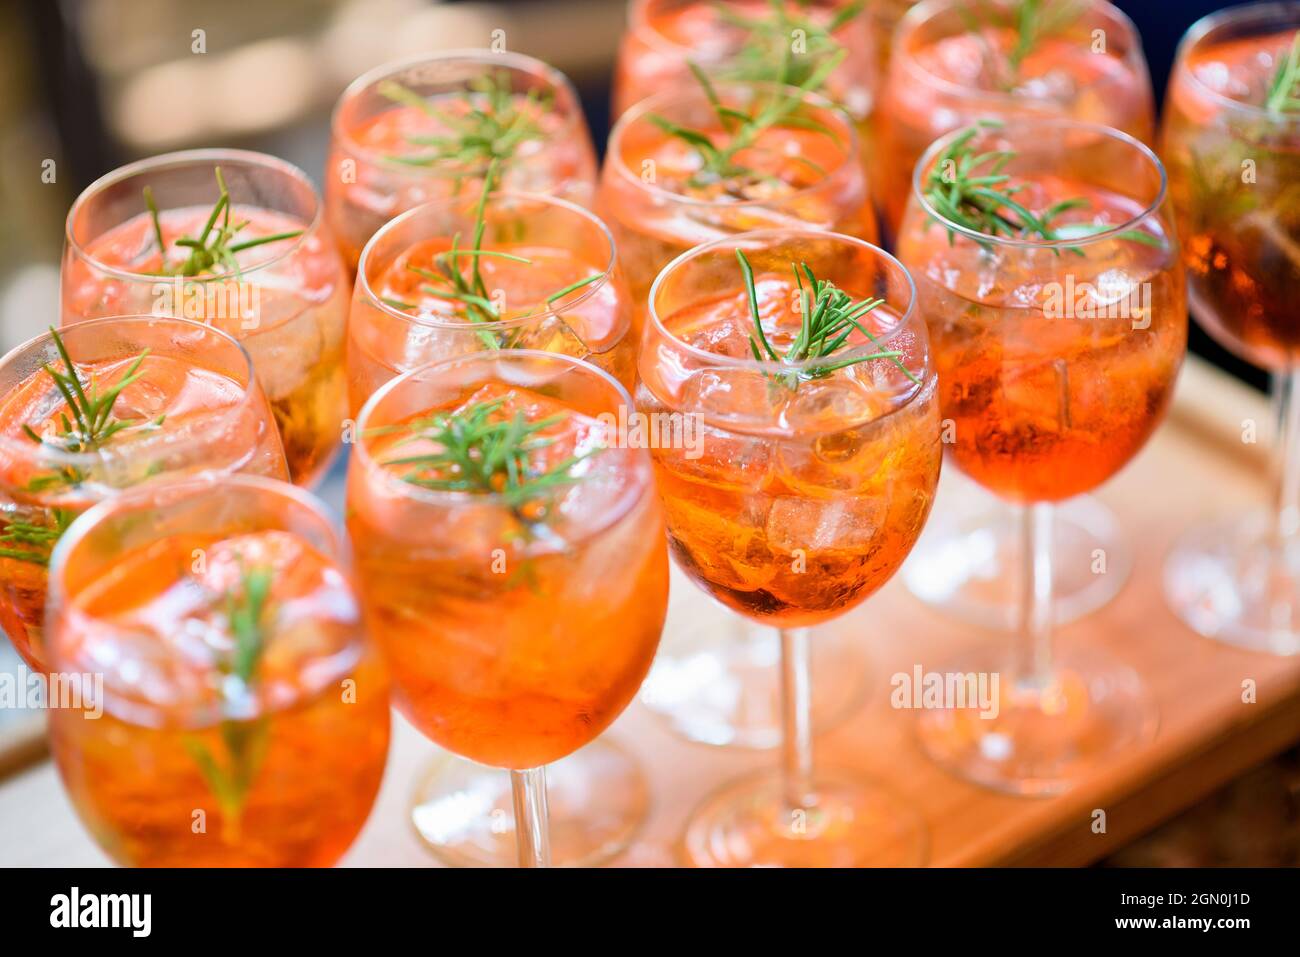 Cocktail alcolici refrigerati serviti sulle rocce con guarnitura rosmarino a righe su un tavolo a buffet in eleganti bicchieri in occasione di un evento con servizio catering Foto Stock